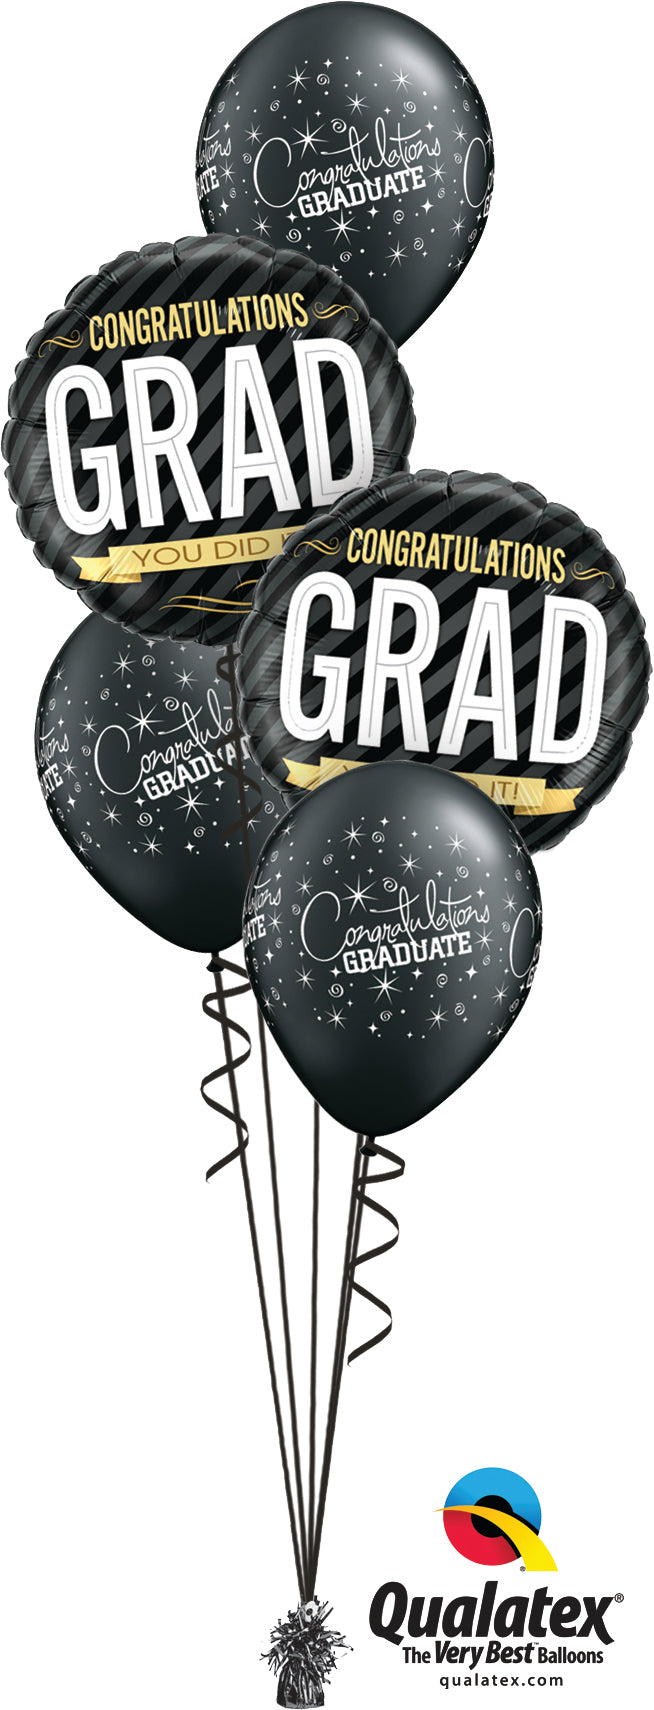 You go Grad! - Balloon Express